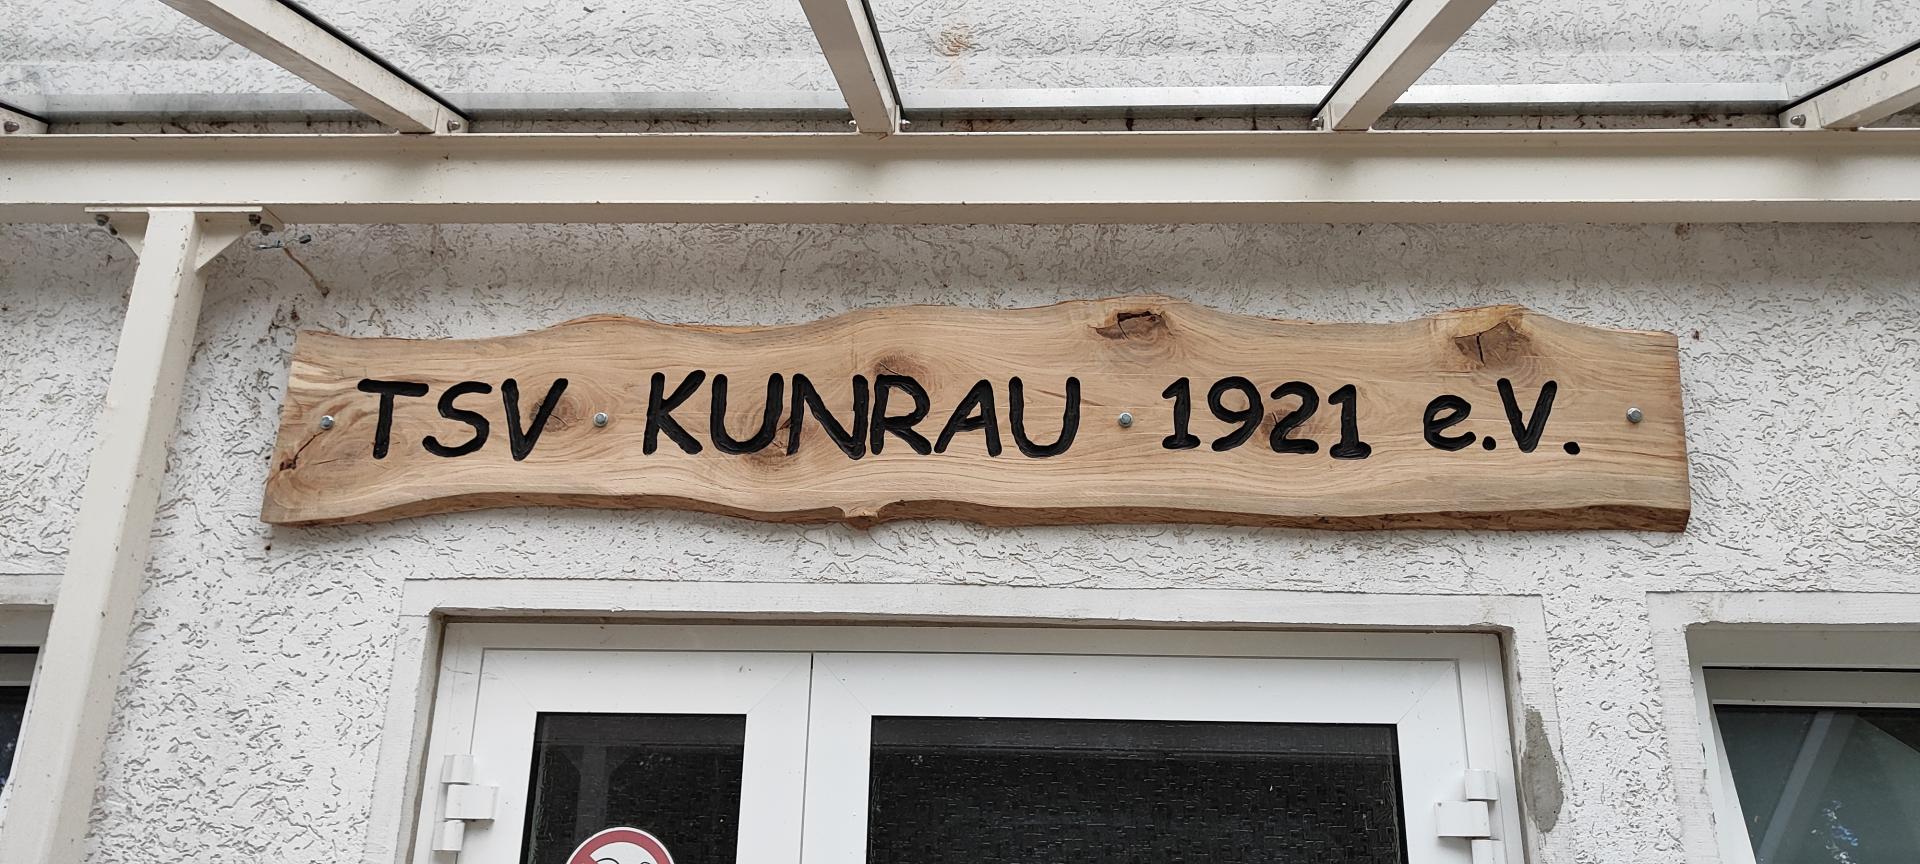 TSV Kunrau1921 e.V.